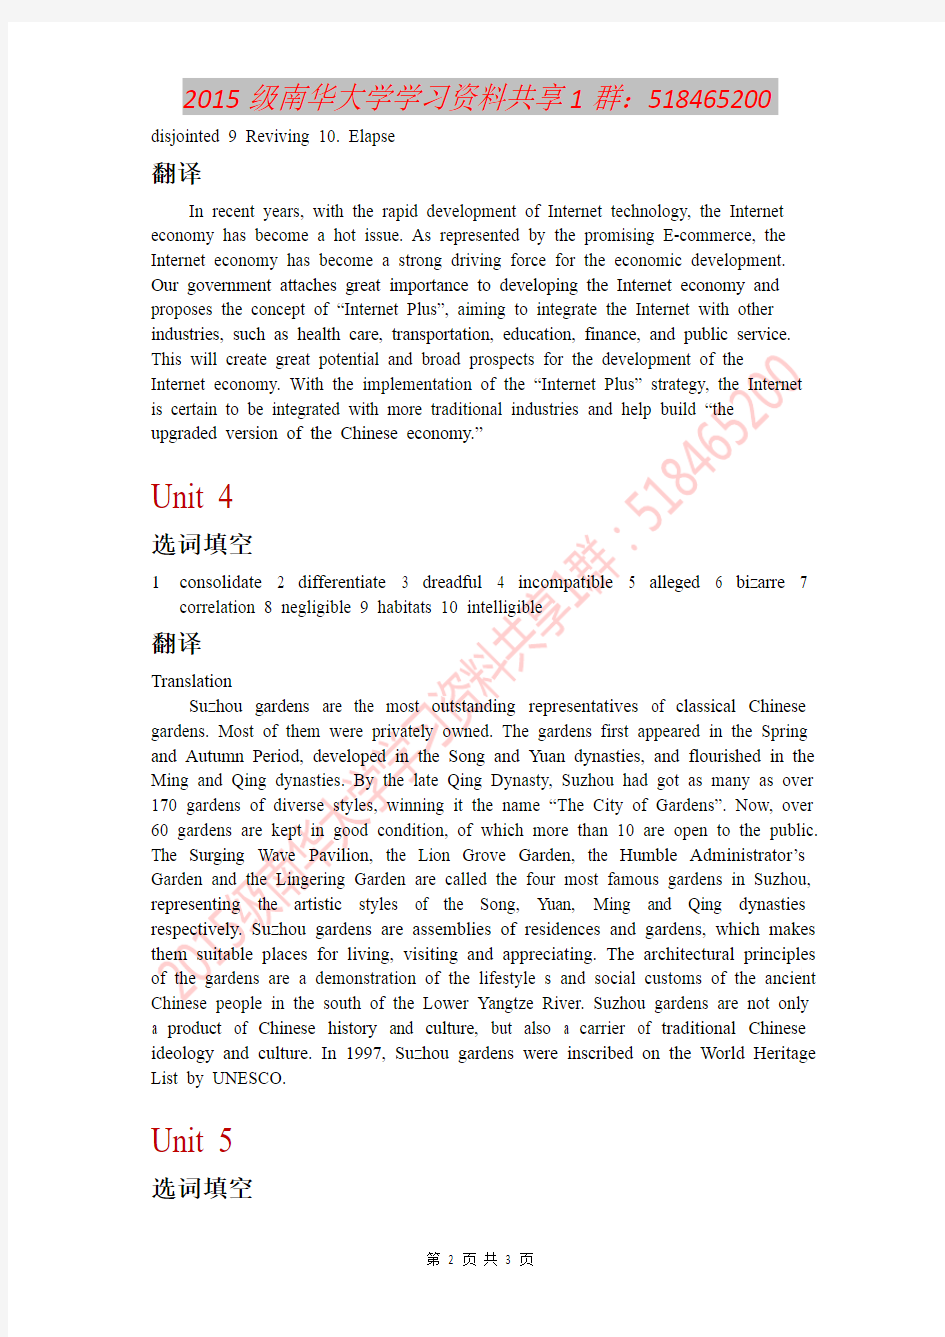 新视野大学英语第三版第四册(1-5章)选词填空及翻译答案